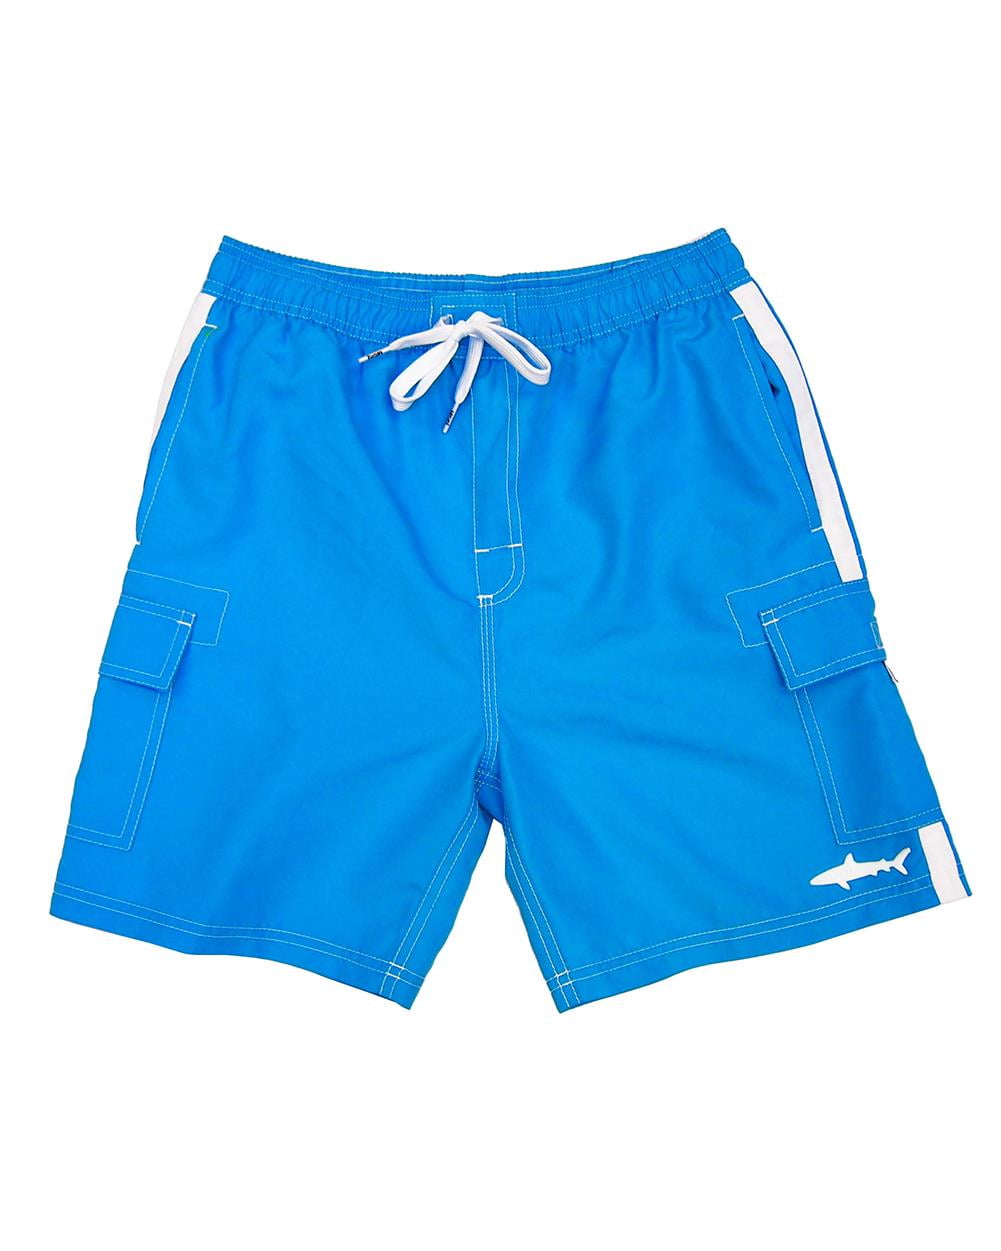 UZZI Kids Swim Shorts Fast Dry Fun Print, Light Blue, Size: 6-8, Uzzi ...